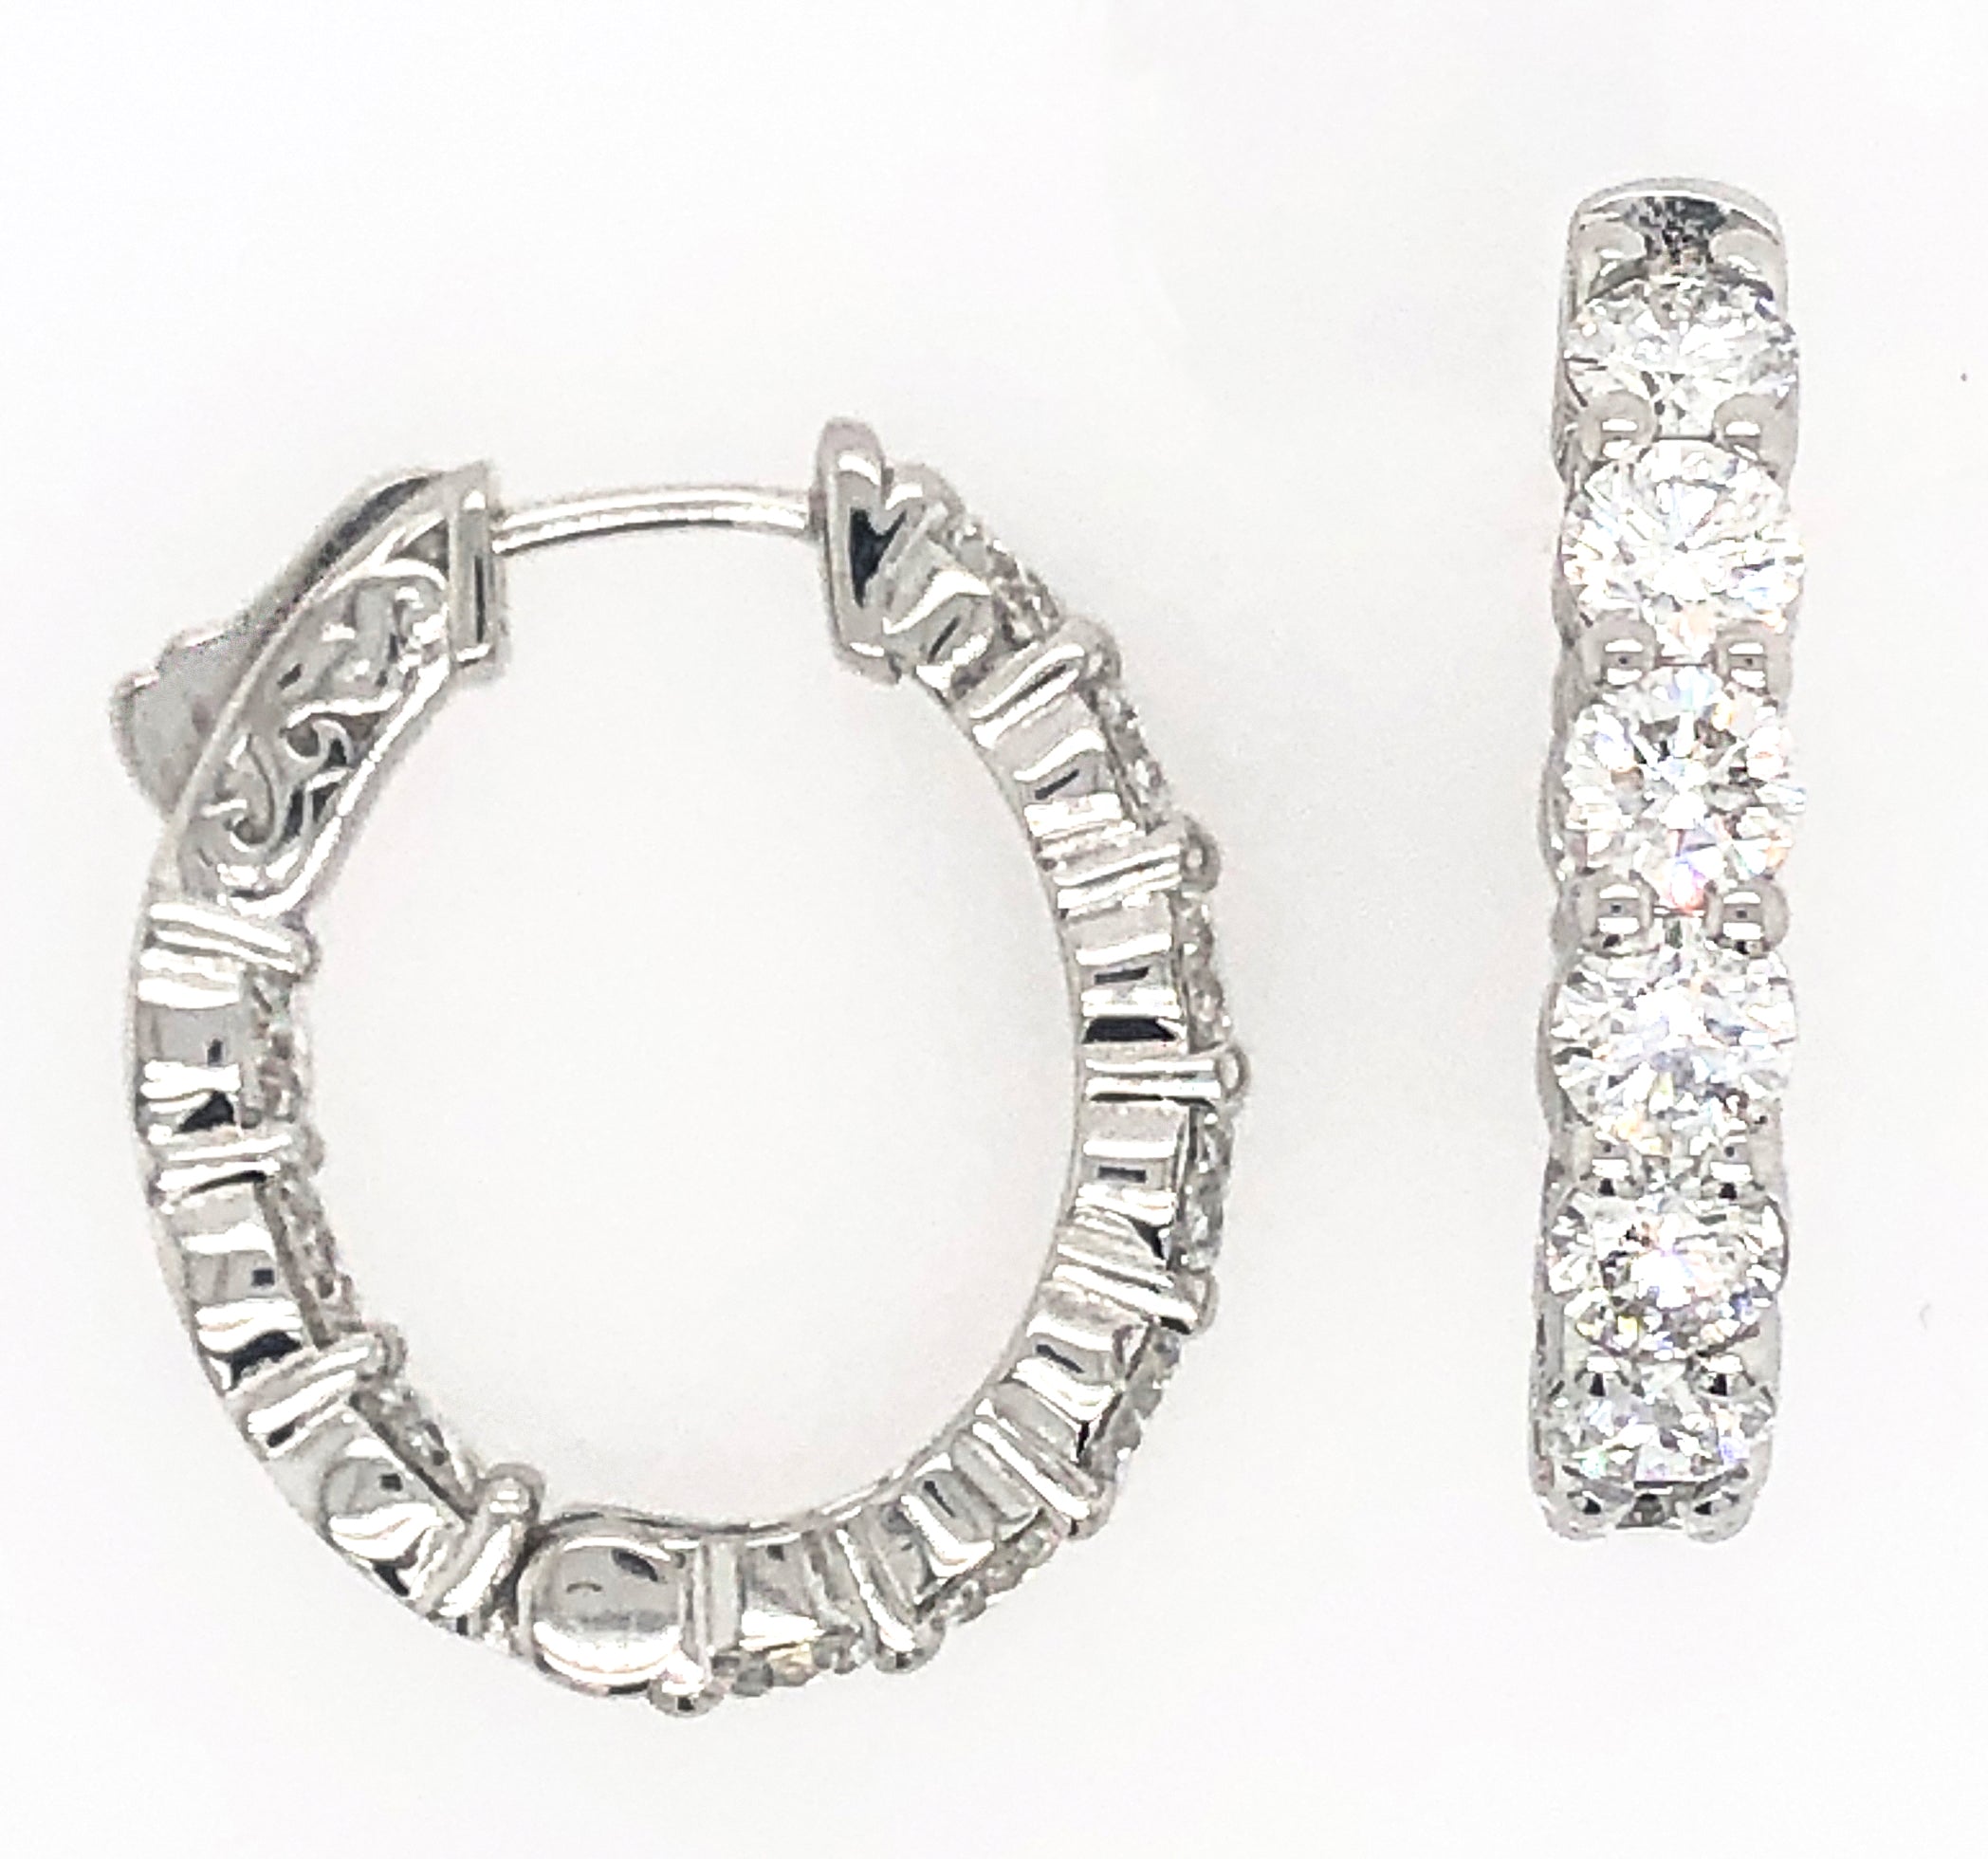 Hoop Diamond Earrings - Diamond Earrings